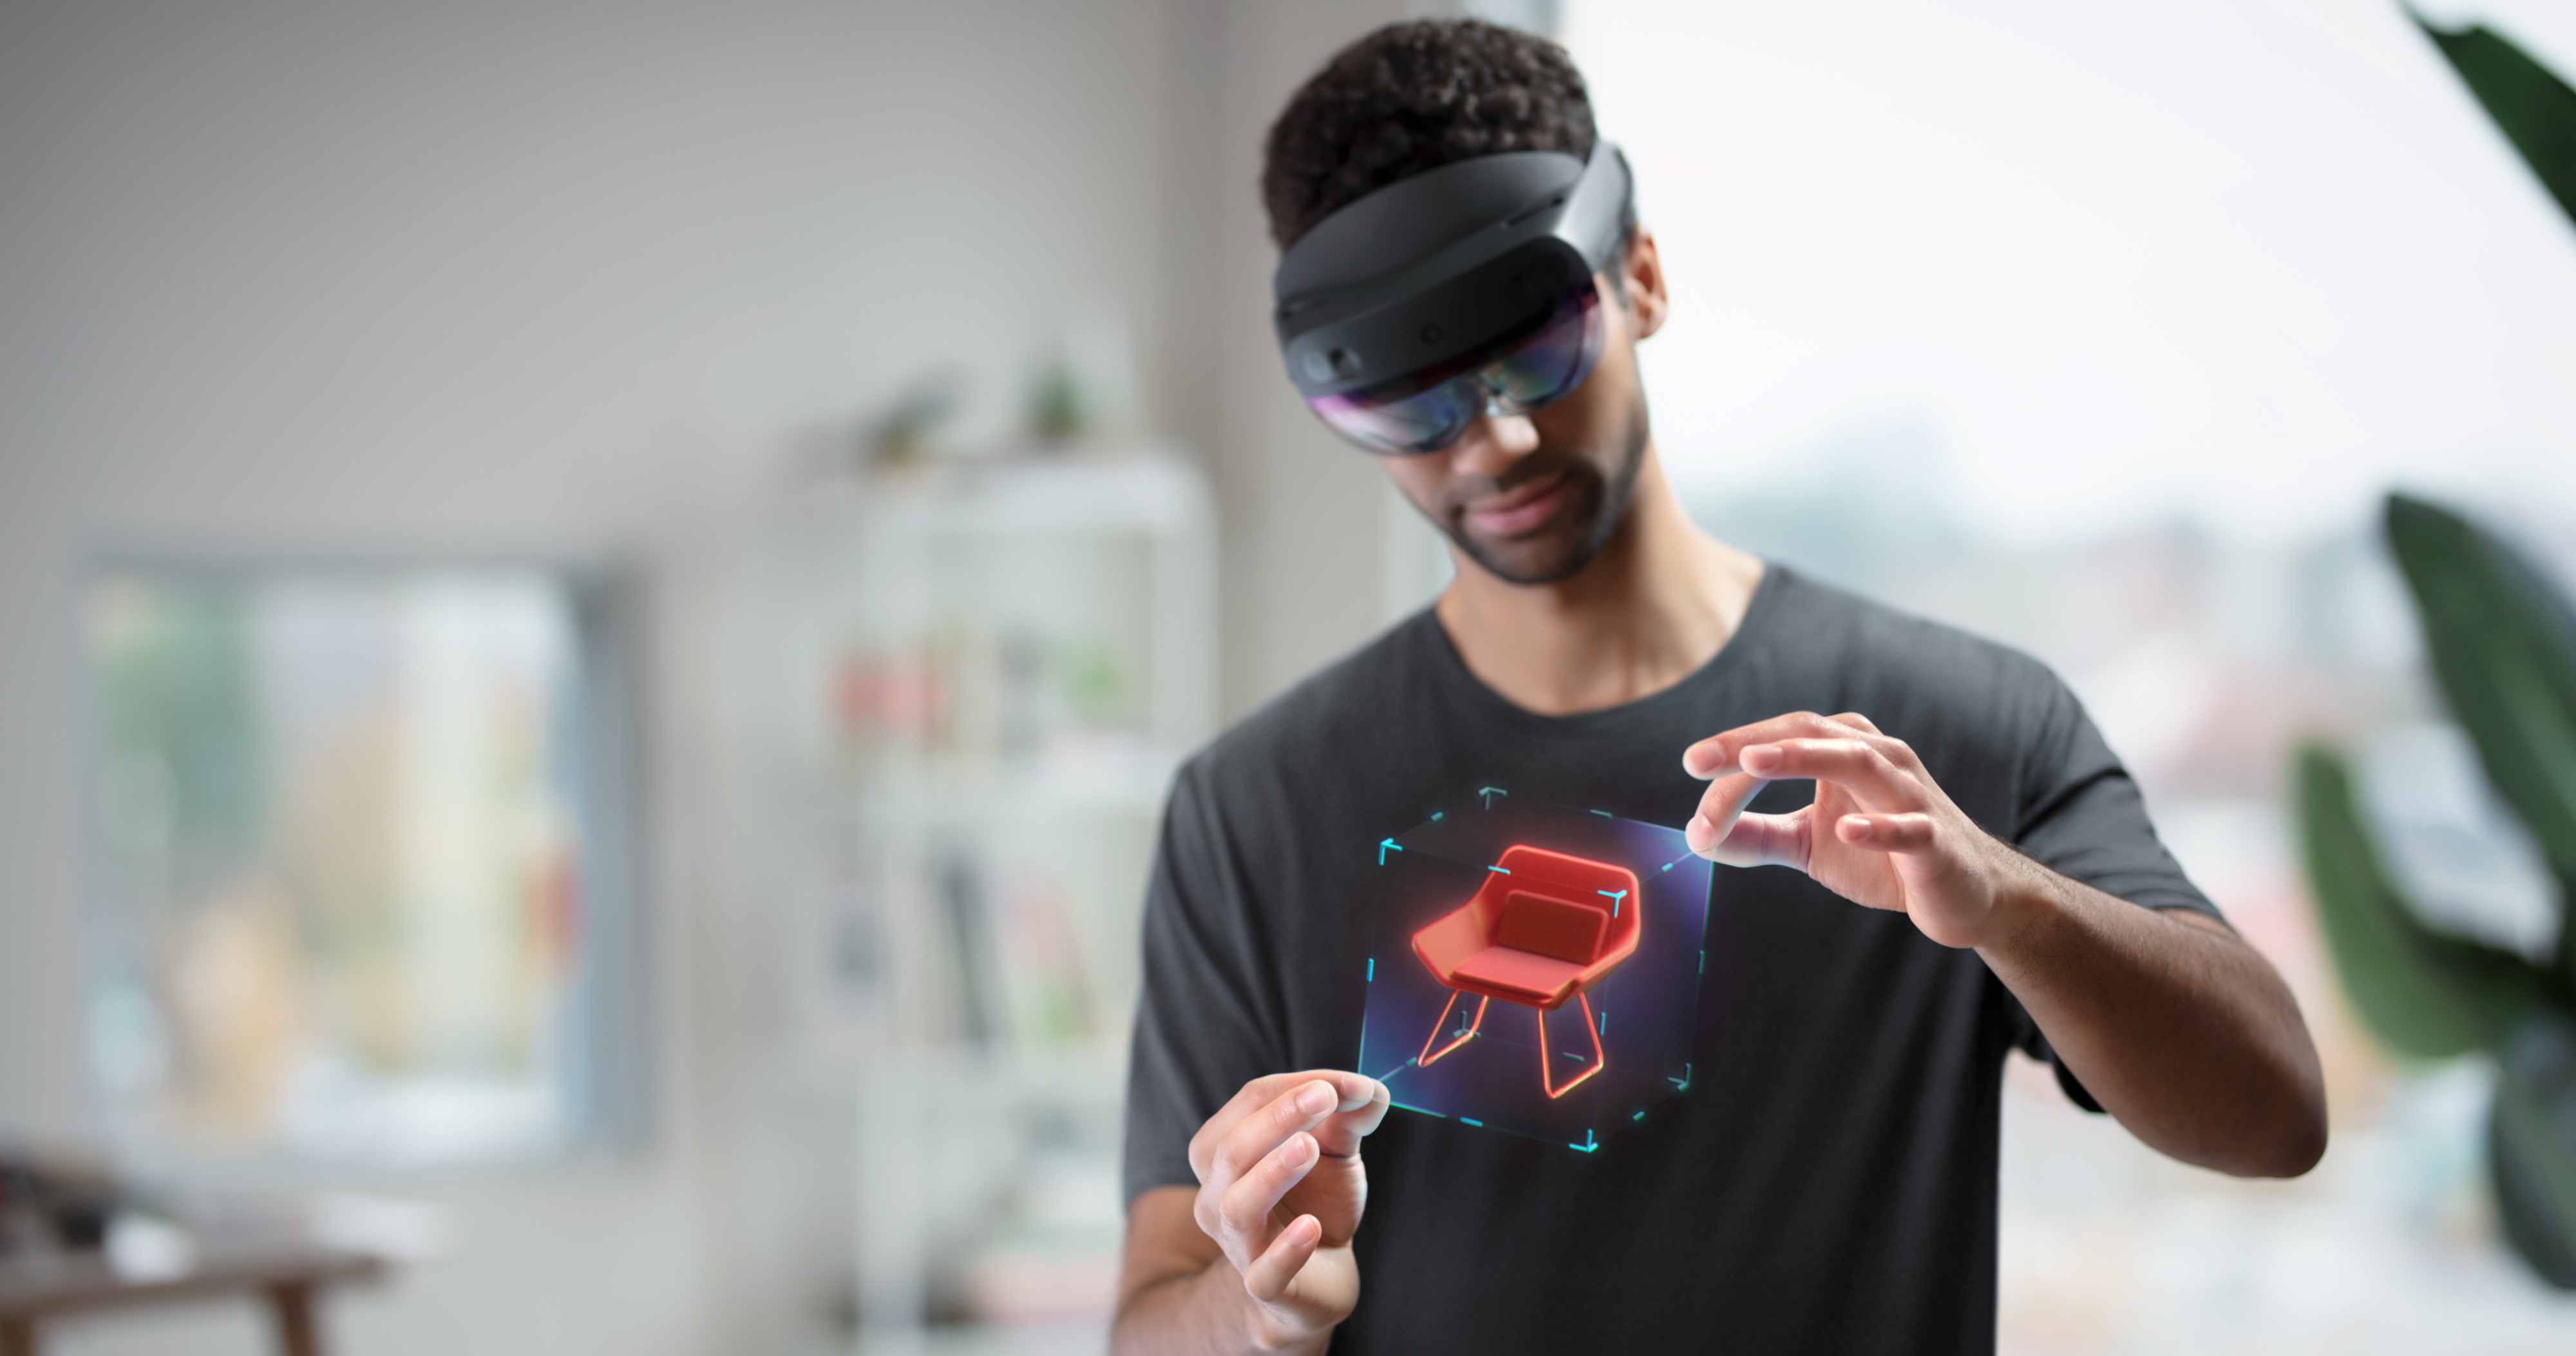 Immagine di un utente che indossa un dispositivo HoloLens e manipola un ologramma con il movimento delle mani